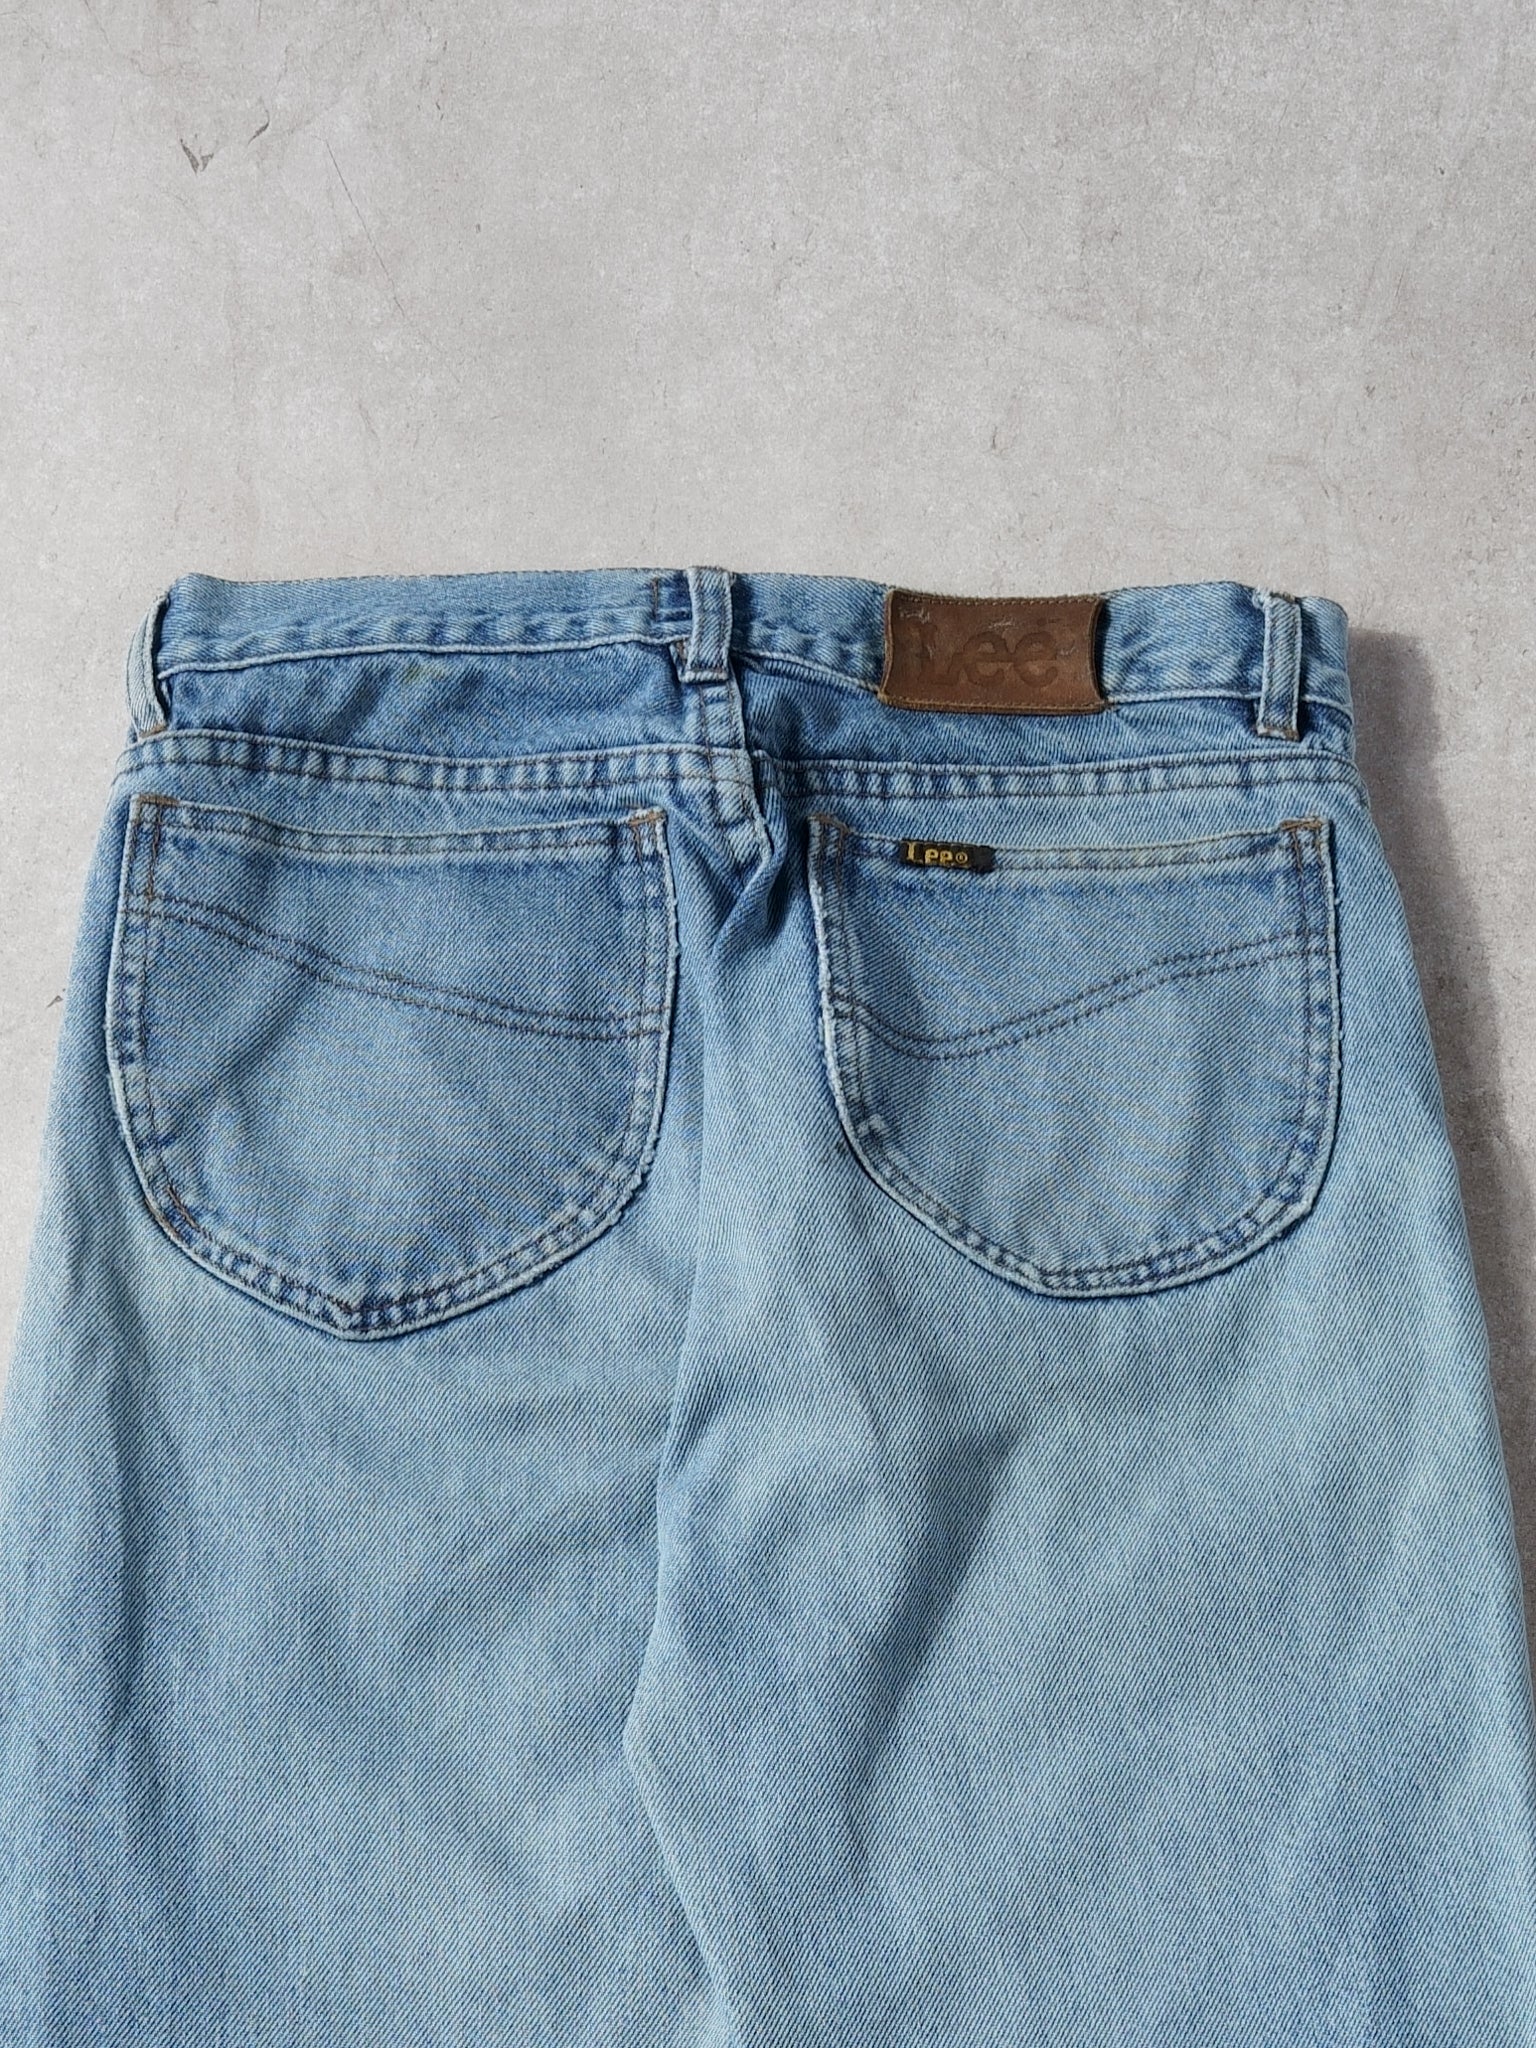 Vintage 90s Light Washed Blue Lee Denim Jeans (28x28)